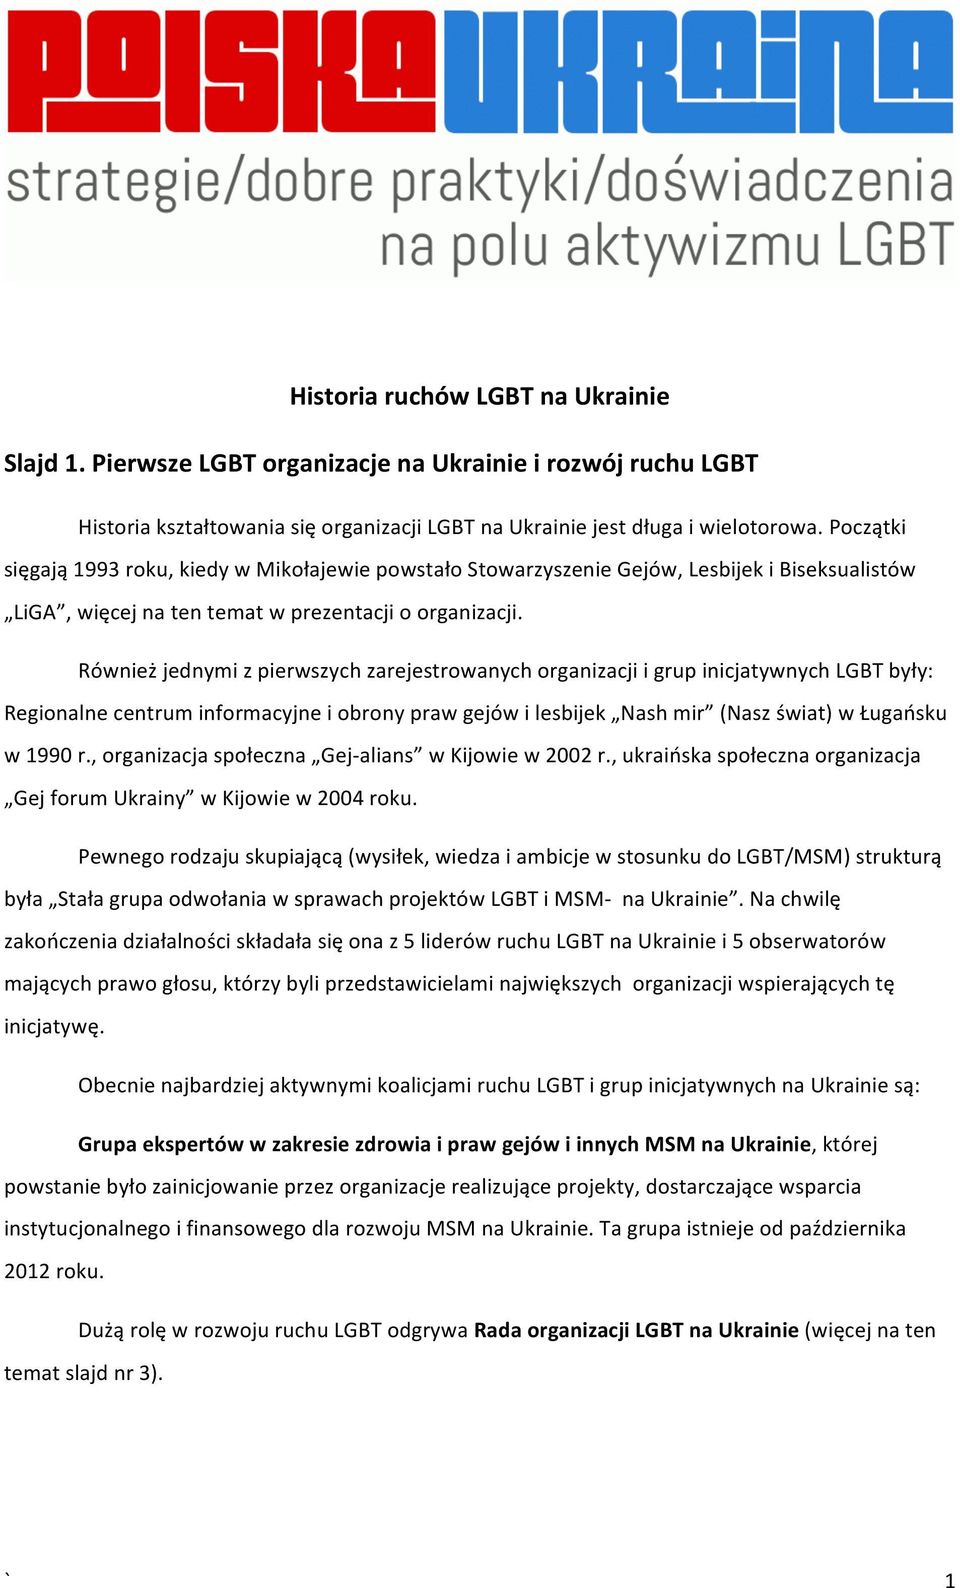 Również jednymi z pierwszych zarejestrowanych organizacji i grup inicjatywnych LGBT były: Regionalne centrum informacyjne i obrony praw gejów i lesbijek Nash mir (Nasz świat) w Ługańsku w 1990 r.